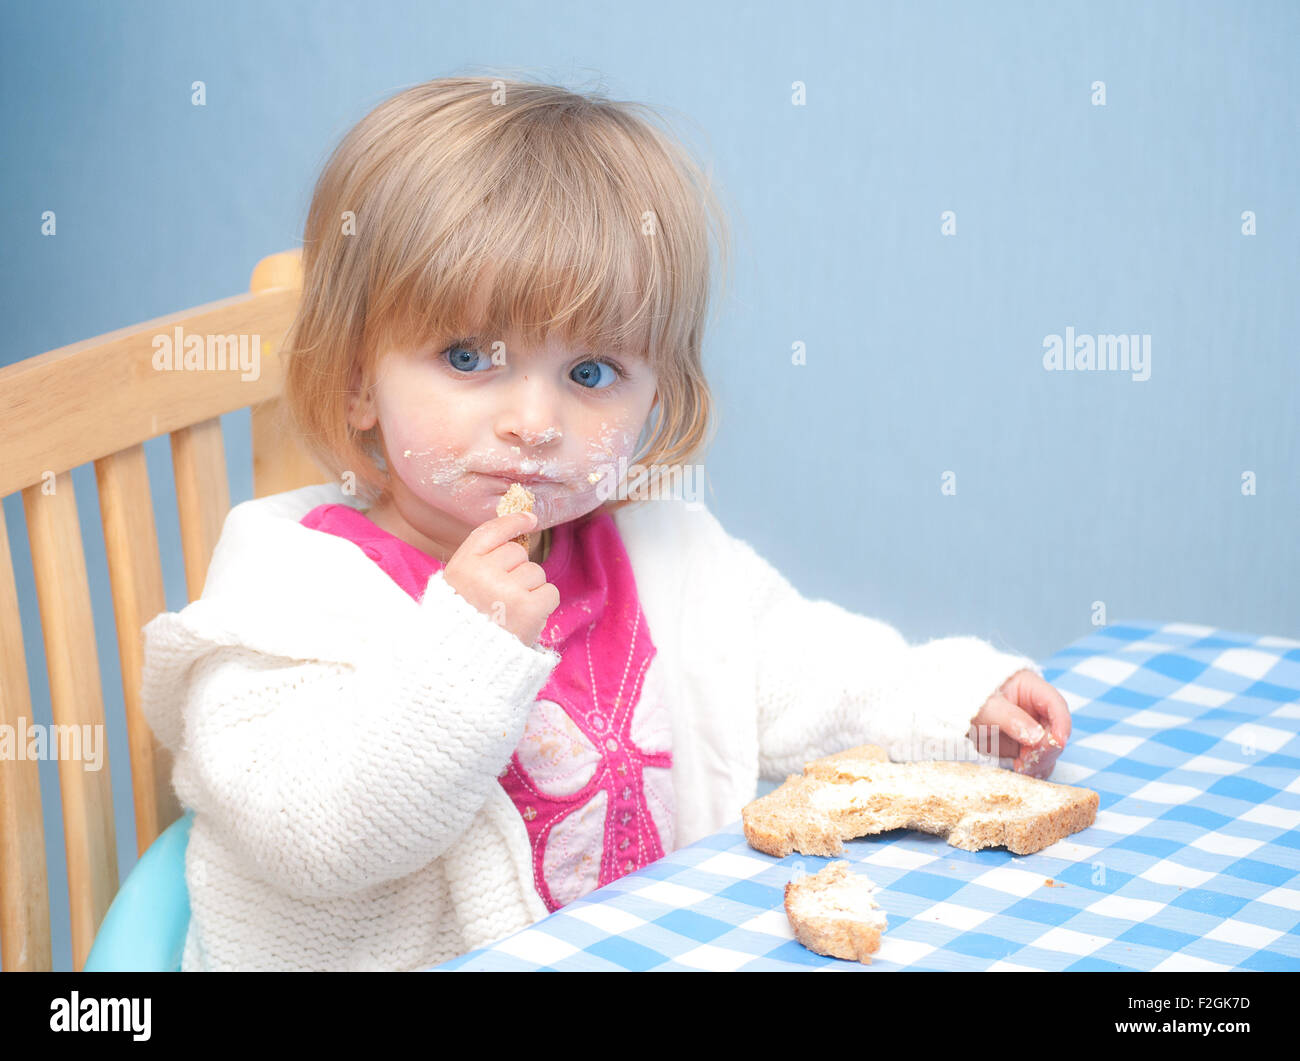 Дети едят масло. Ребенок ест сливочное масло. Ребенок ест хлеб с маслом. Девочка ест масло. Детки едят масло.